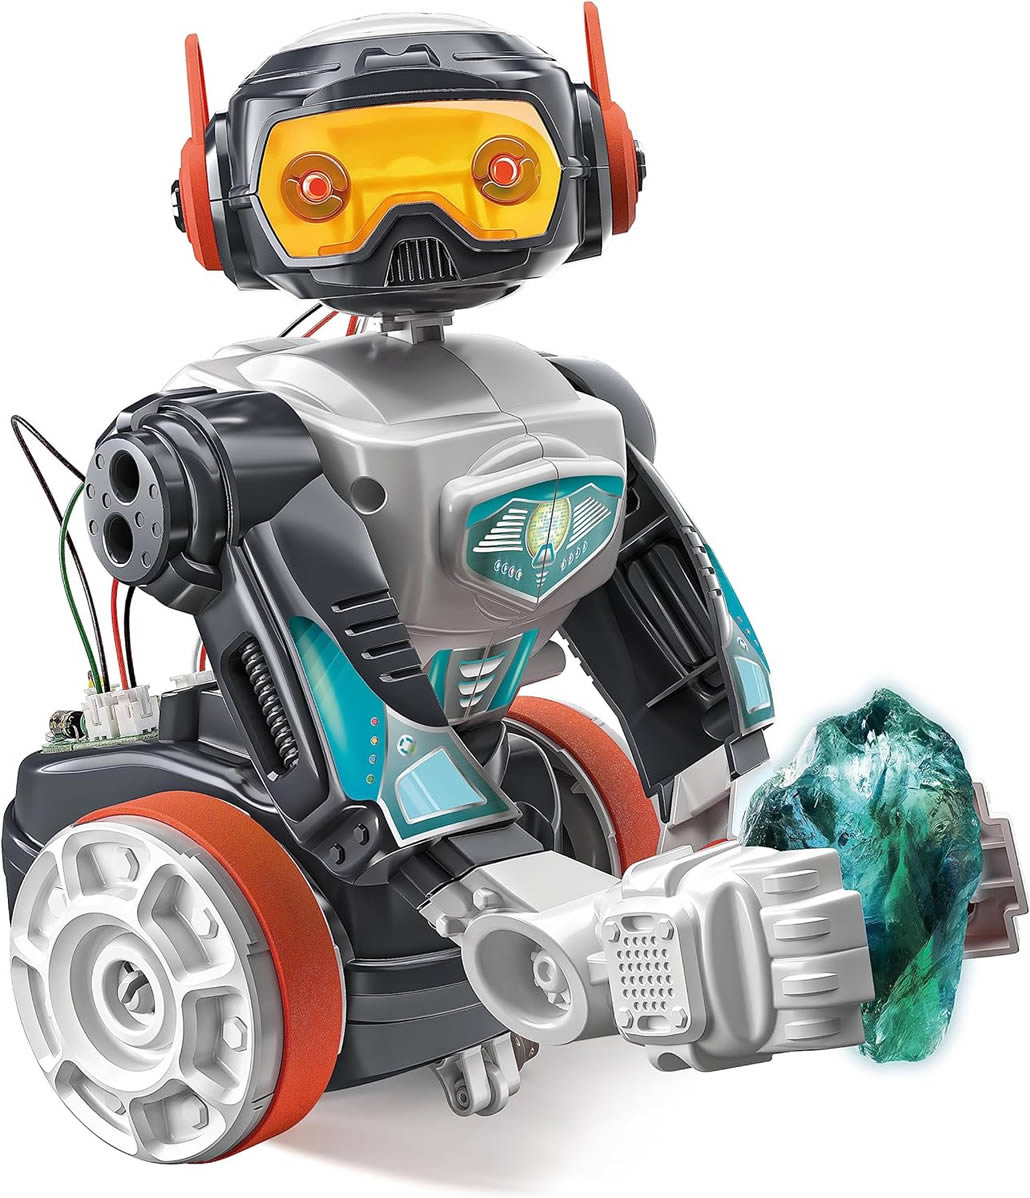 Clementoni- Scienza Robotics-Evolution 2.0-Robot nero da Costruire E Programmare, Telecomandato